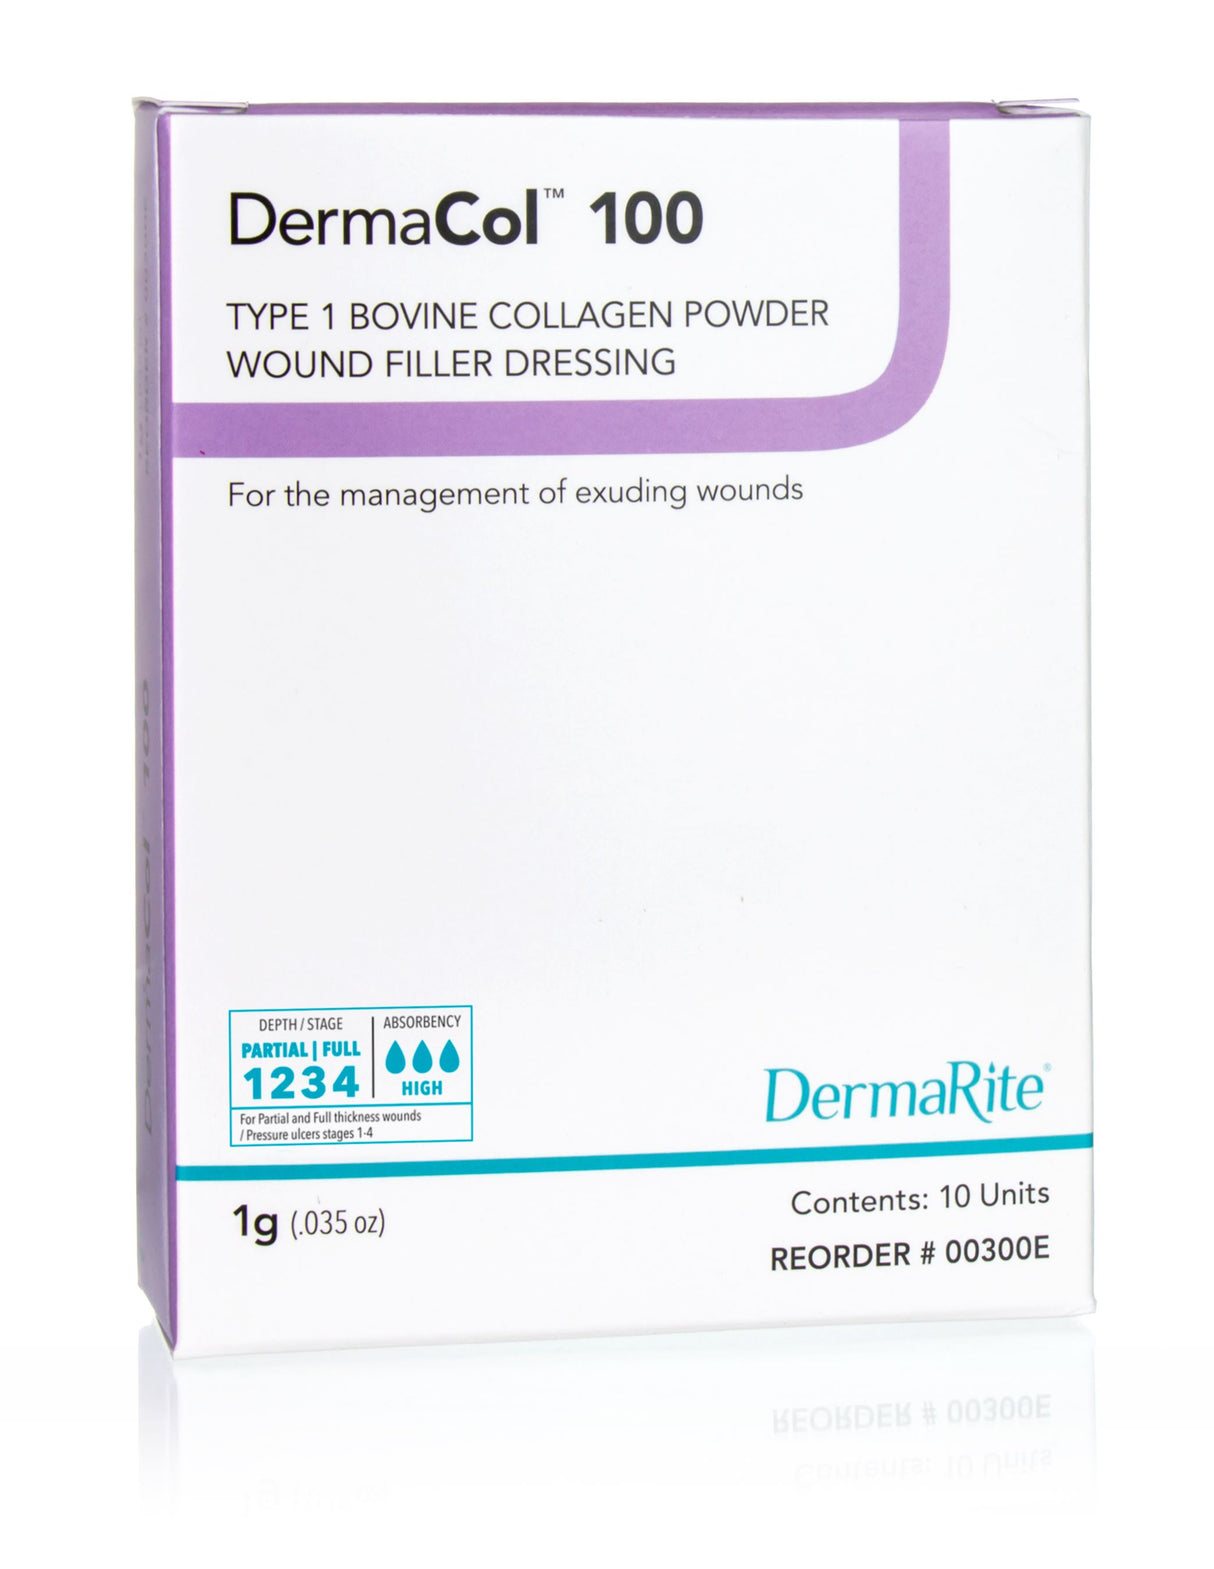 Image of DermaCol 100 Type 1 Bovine Collagen Powder Wound Filler Dressing, 1g